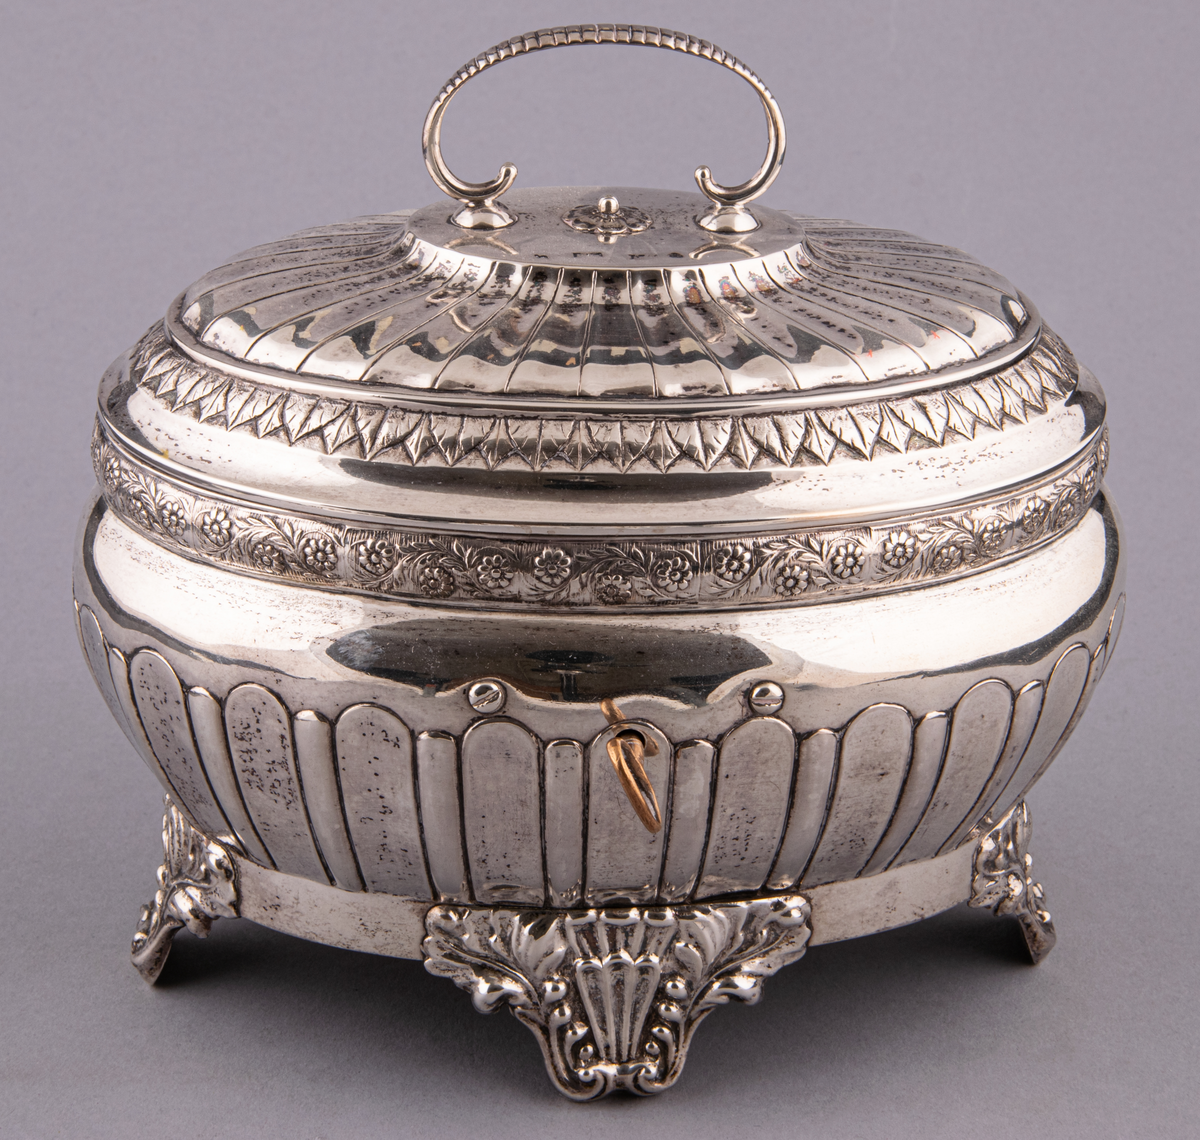 Sockerskrin i silver, tillverkat av Jakob Richard Borg, Gävle.
Inskription: Minne av E och W. R. till P och M. Roman. den 26/6 1848.